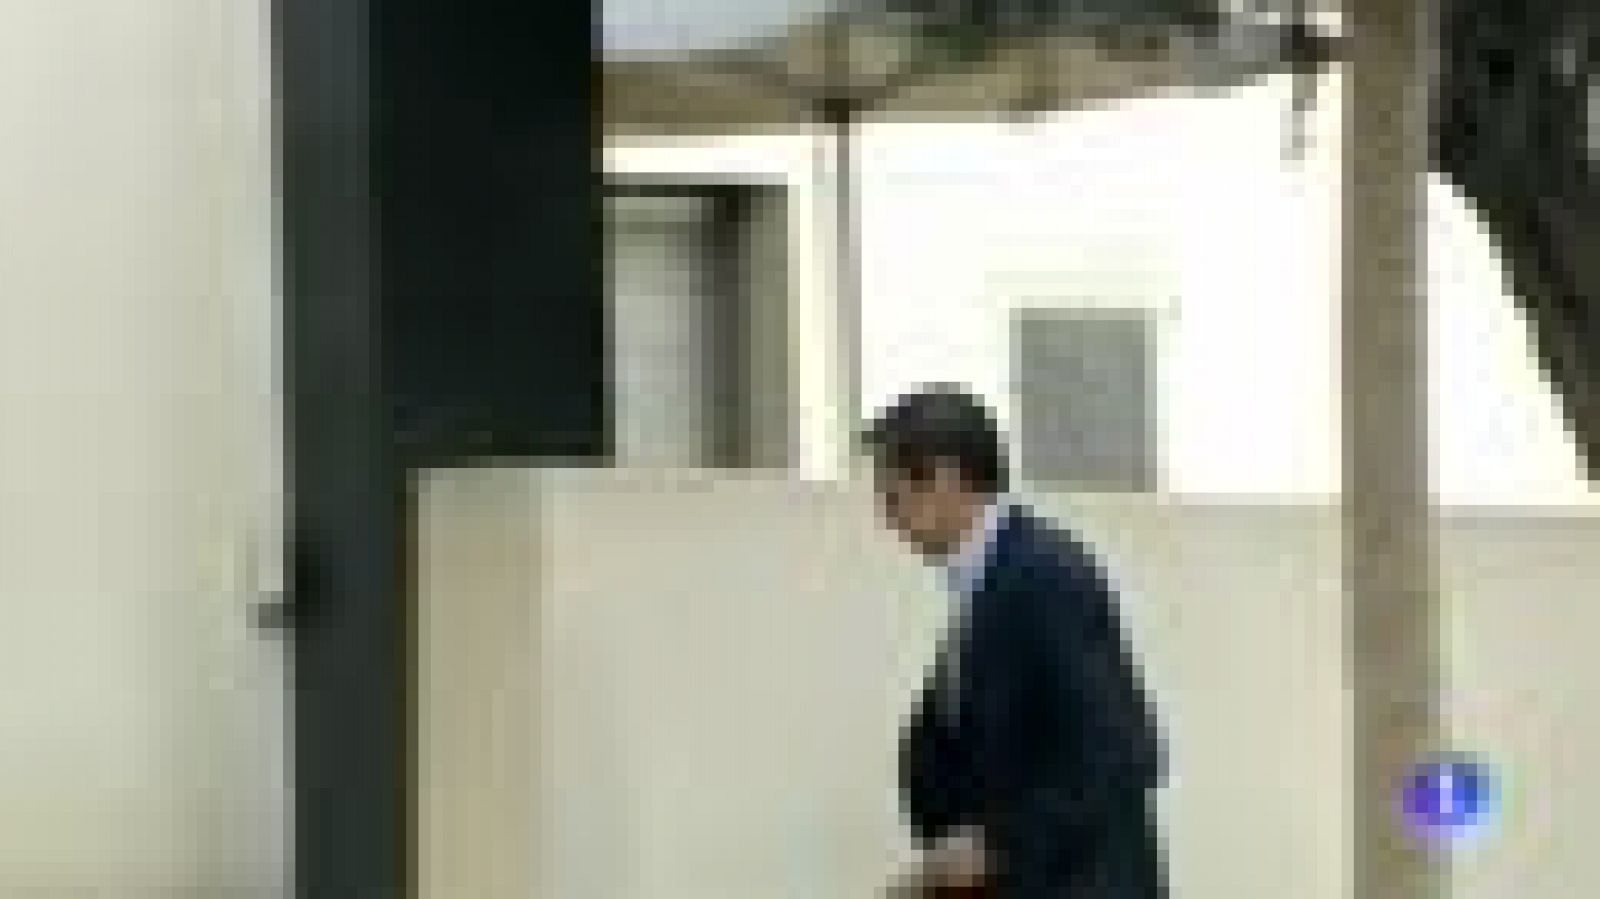 Decretada prisión incondicional sin fianz para Eduardo Zaplana por el caso Erial